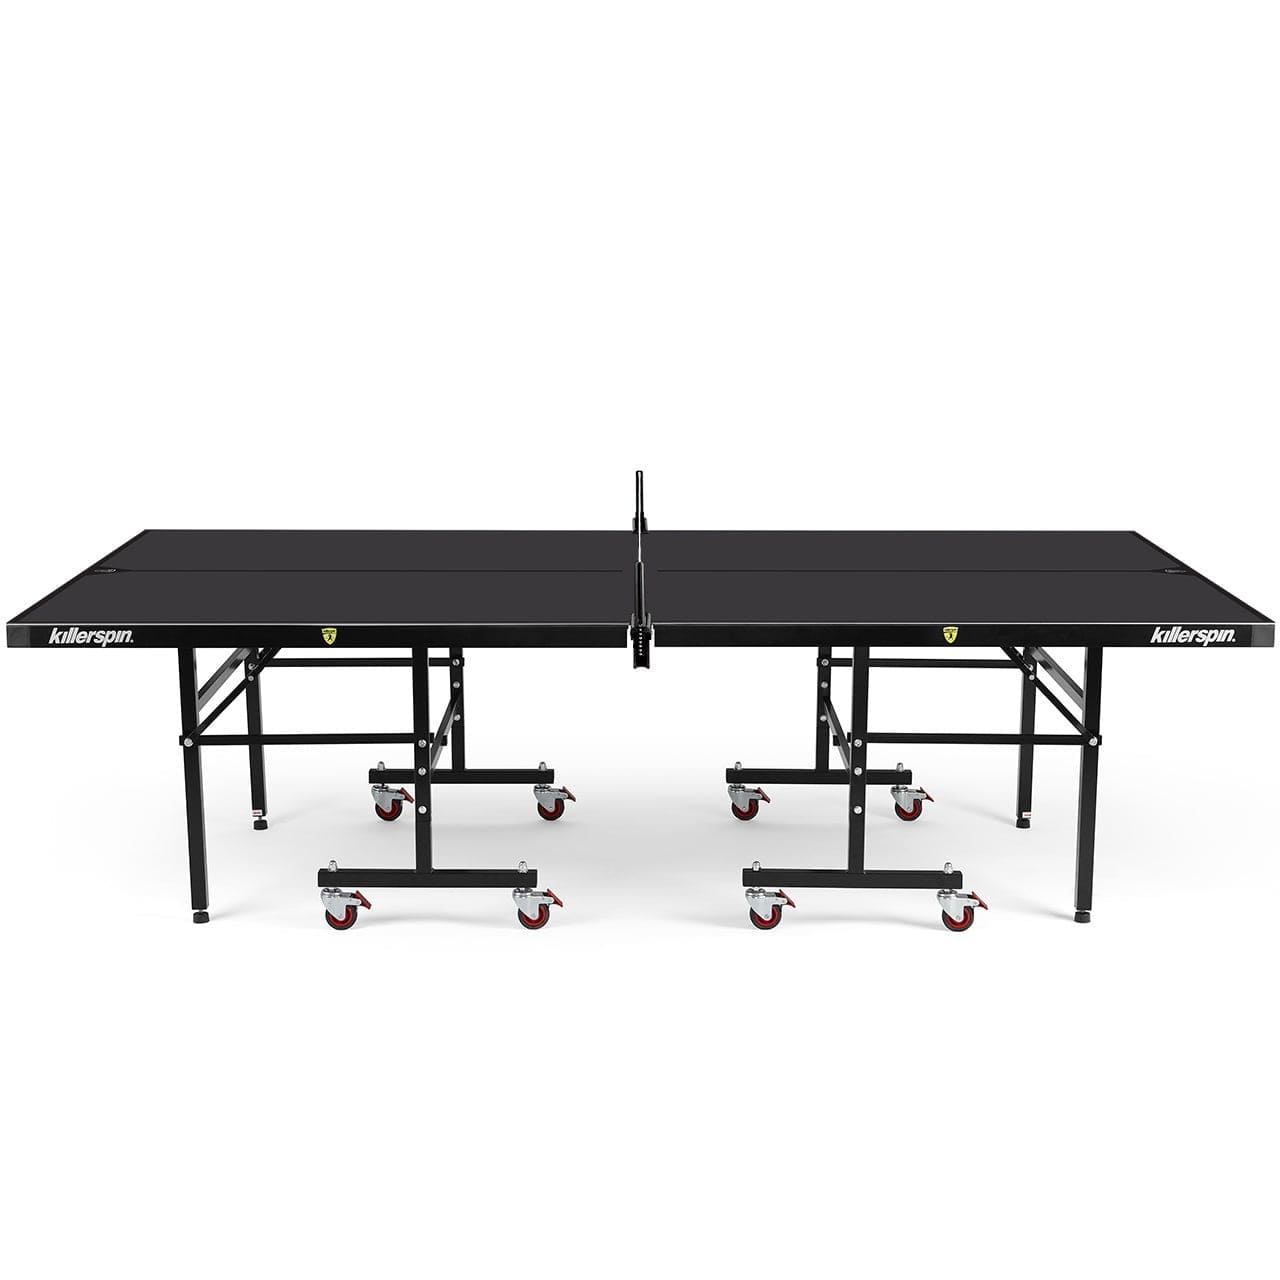 Killerspin MyT10 BlackStorm Outdoor Ping Pong Table